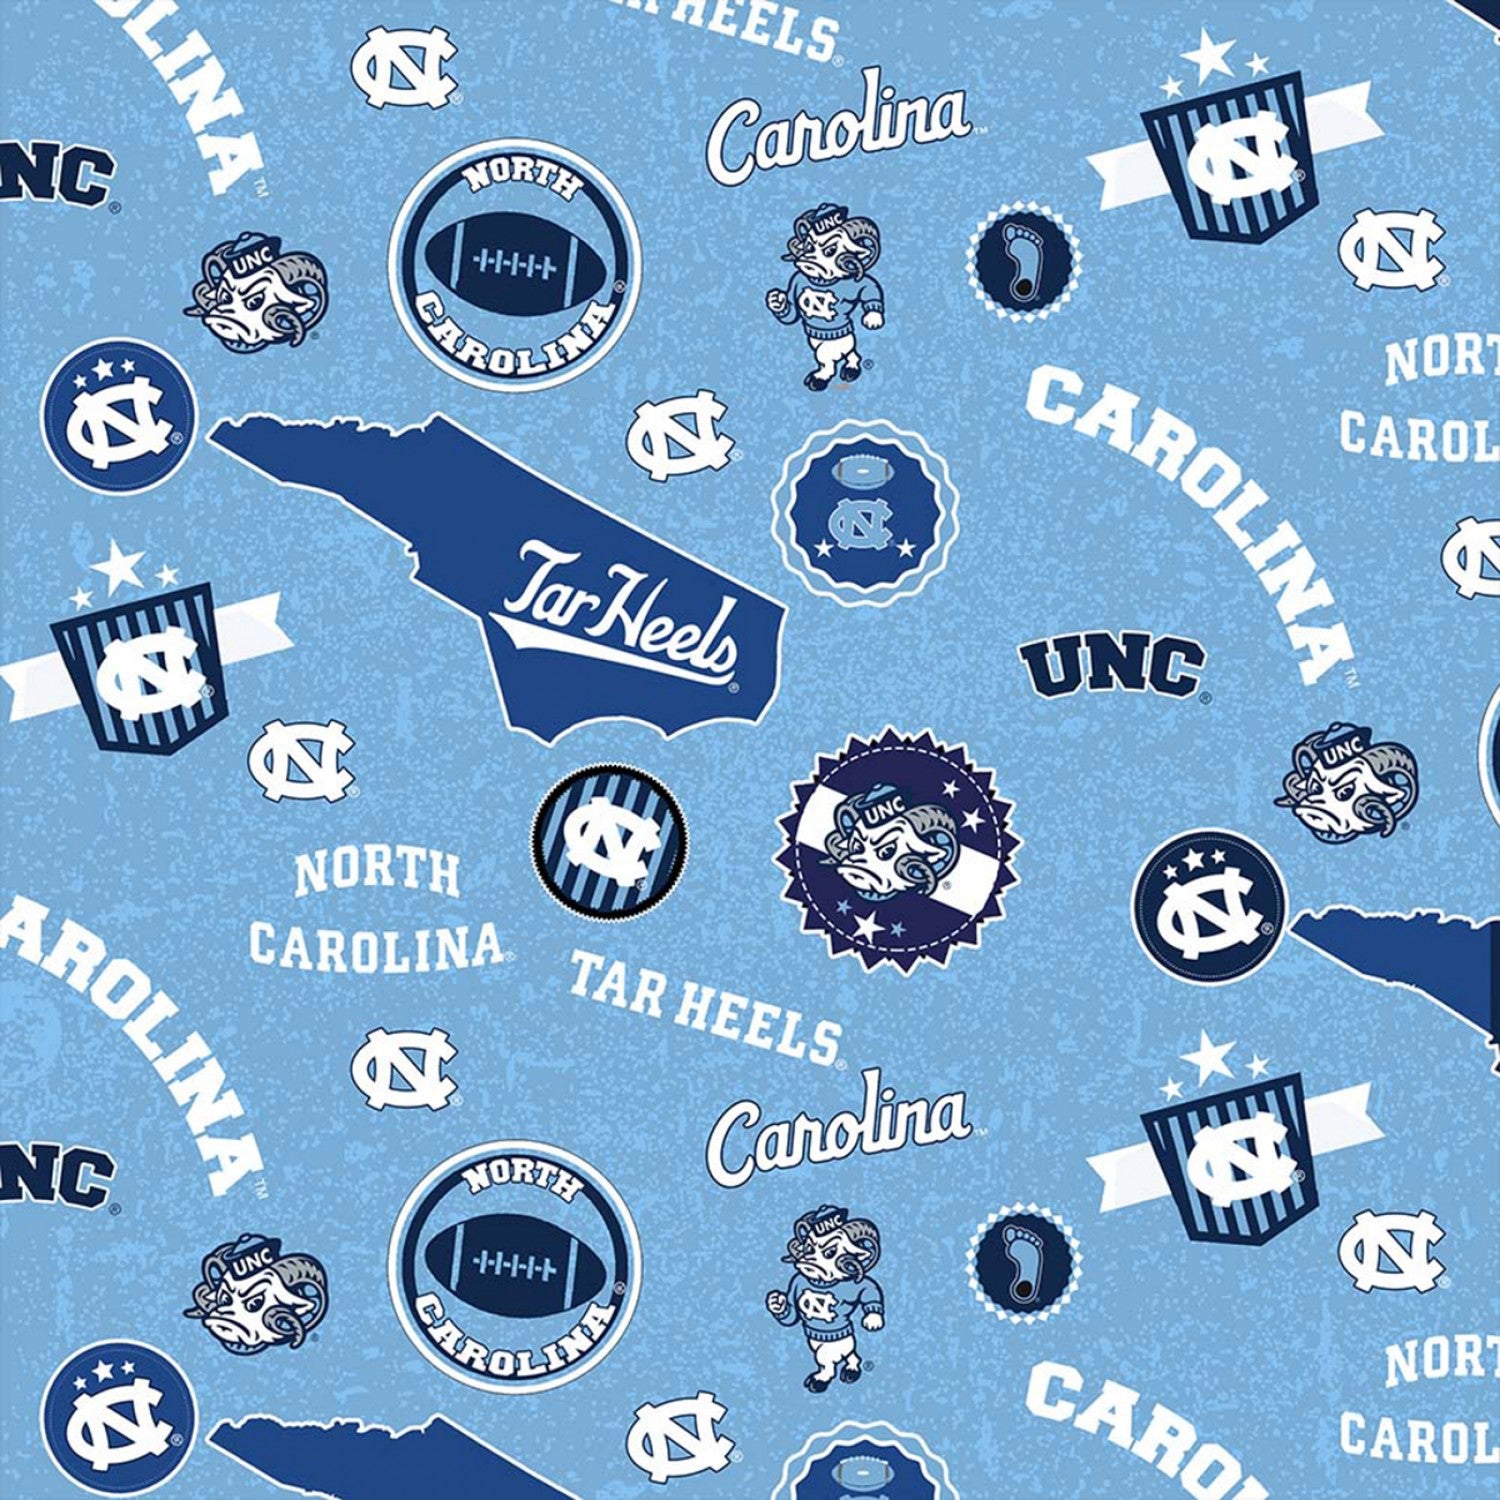 University of South Carolina Gamecocks Cotton Fabric Tone on Tone